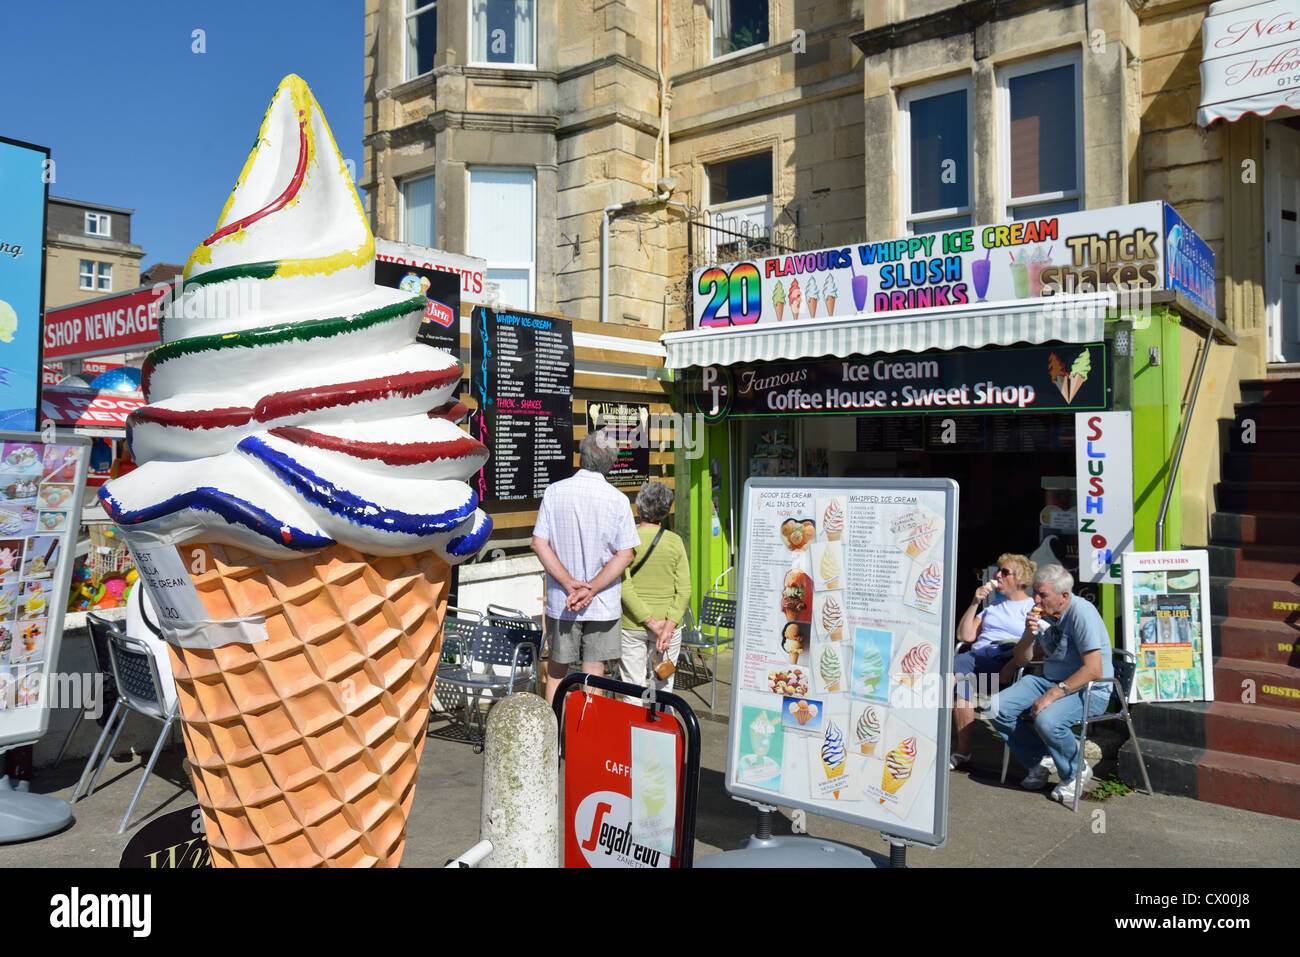 Ice-cream kiosk on Marine Parade, Weston-Super-Mare, Somerset, England, United Kingdom Stock Photo